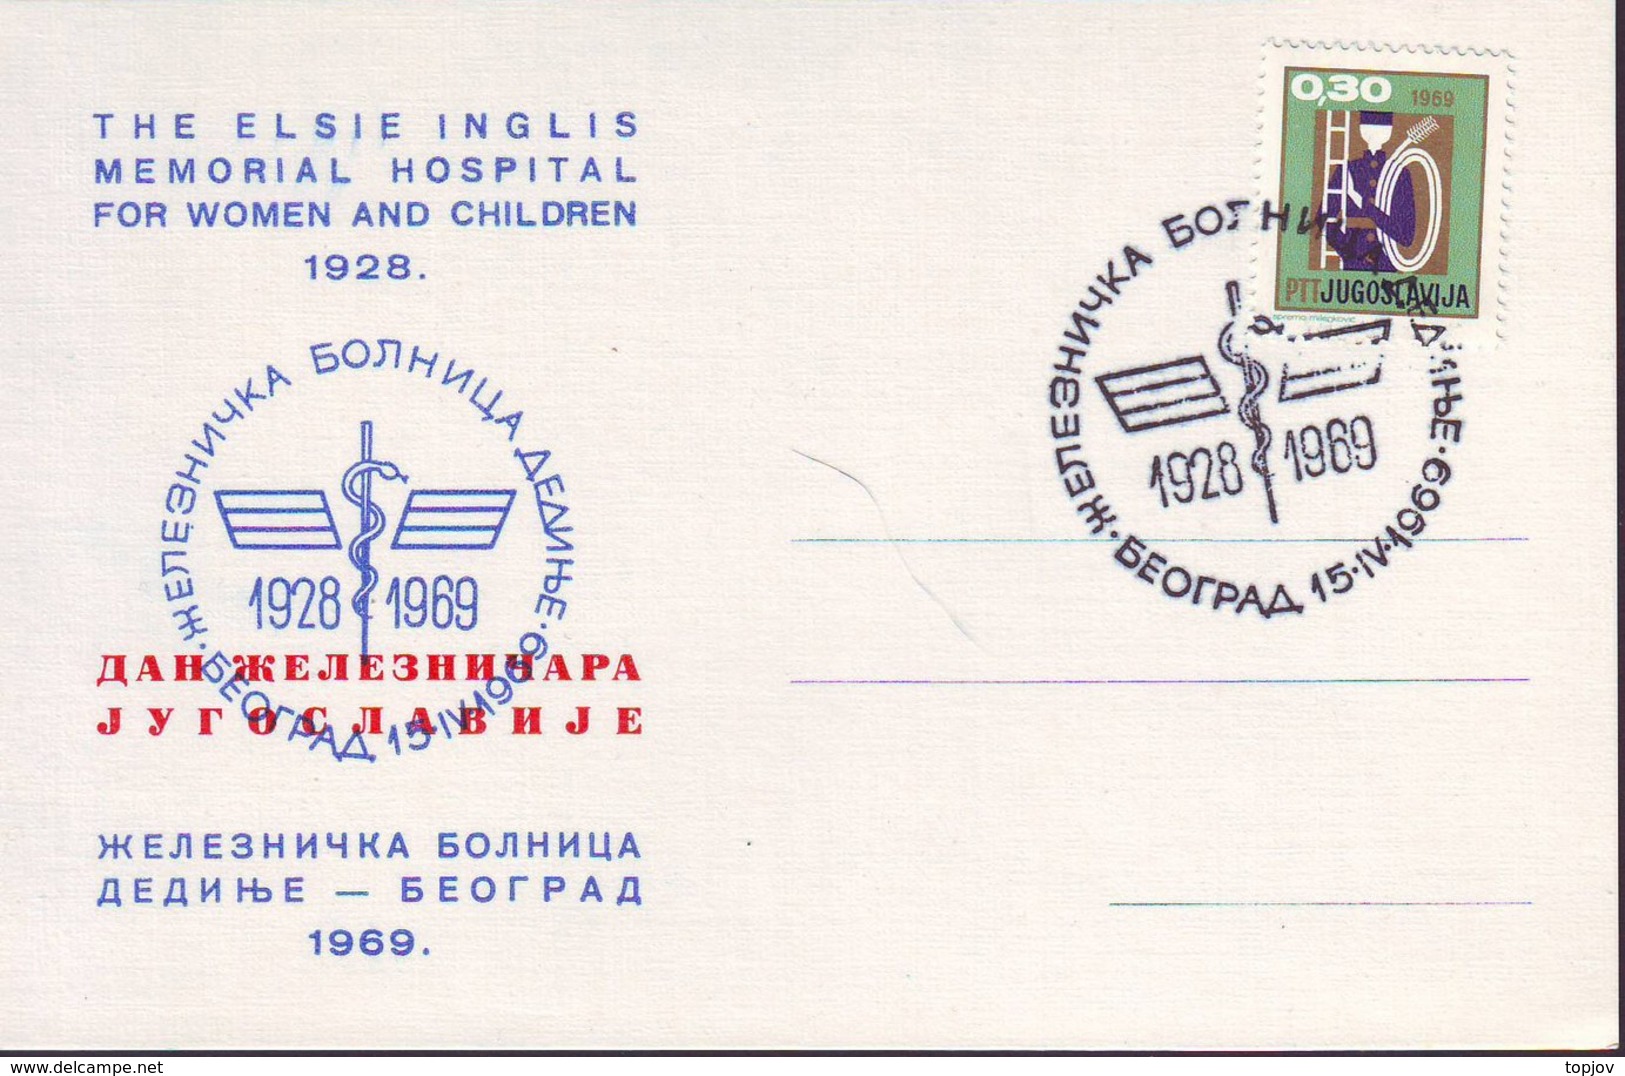 YUGOSLAVIA  - JUGOSLAVIA  - MEMORIAL HOSPITAL FOR WOMEN AND CHILDREN 1928 - BEOGRAD - 1969 - Milieuvervuiling